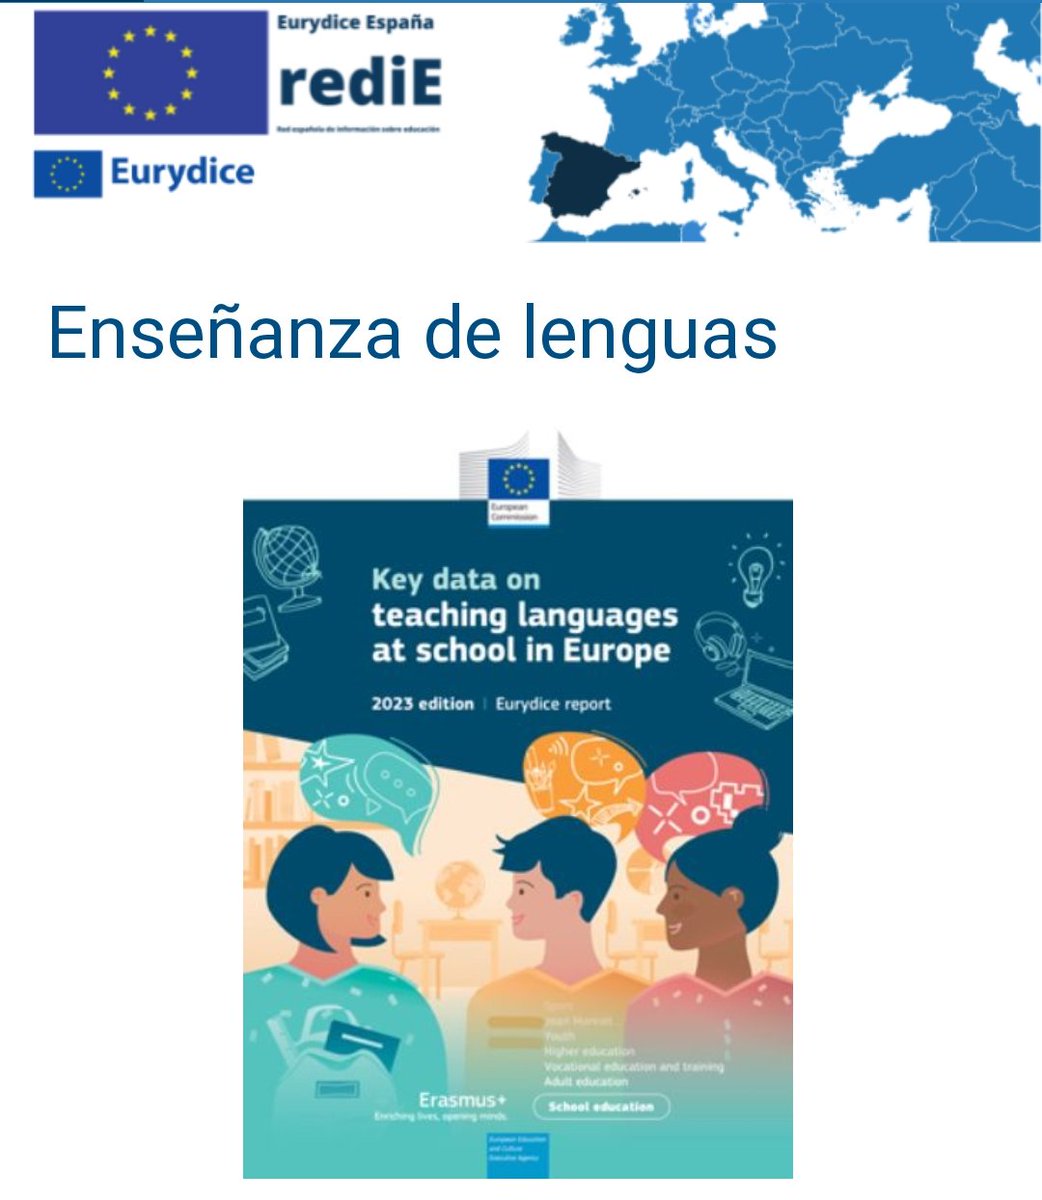 Edición de 2023 de 'Cifras clave sobre la enseñanza de lenguas en los centros educativos de Europa' (quinta edición del informe de @EurydiceEU):
educacionyfp.gob.es/mc/redie-euryd…